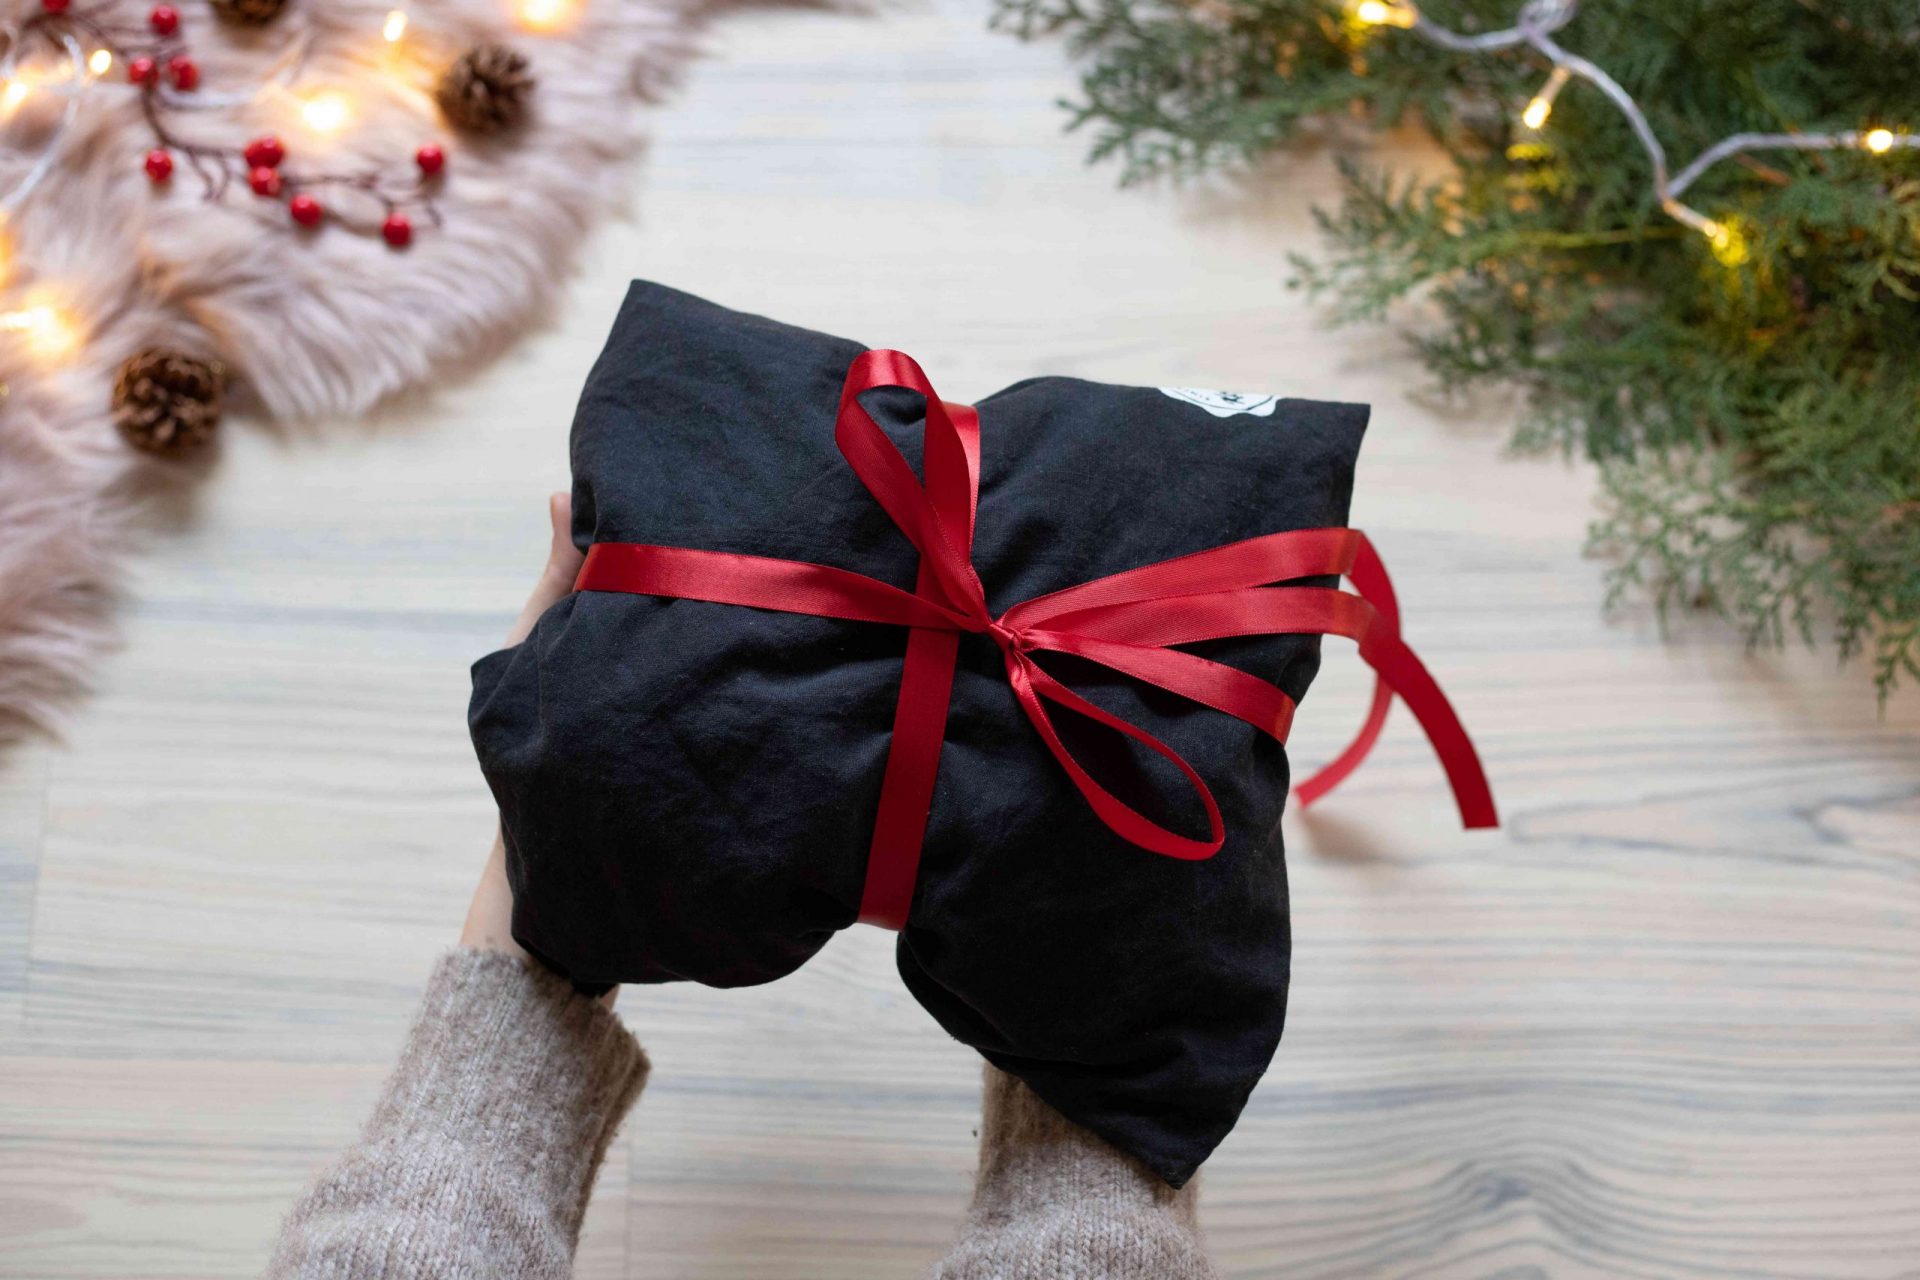 bolsa de productos reutilizada como papel de regalo para la Navidad